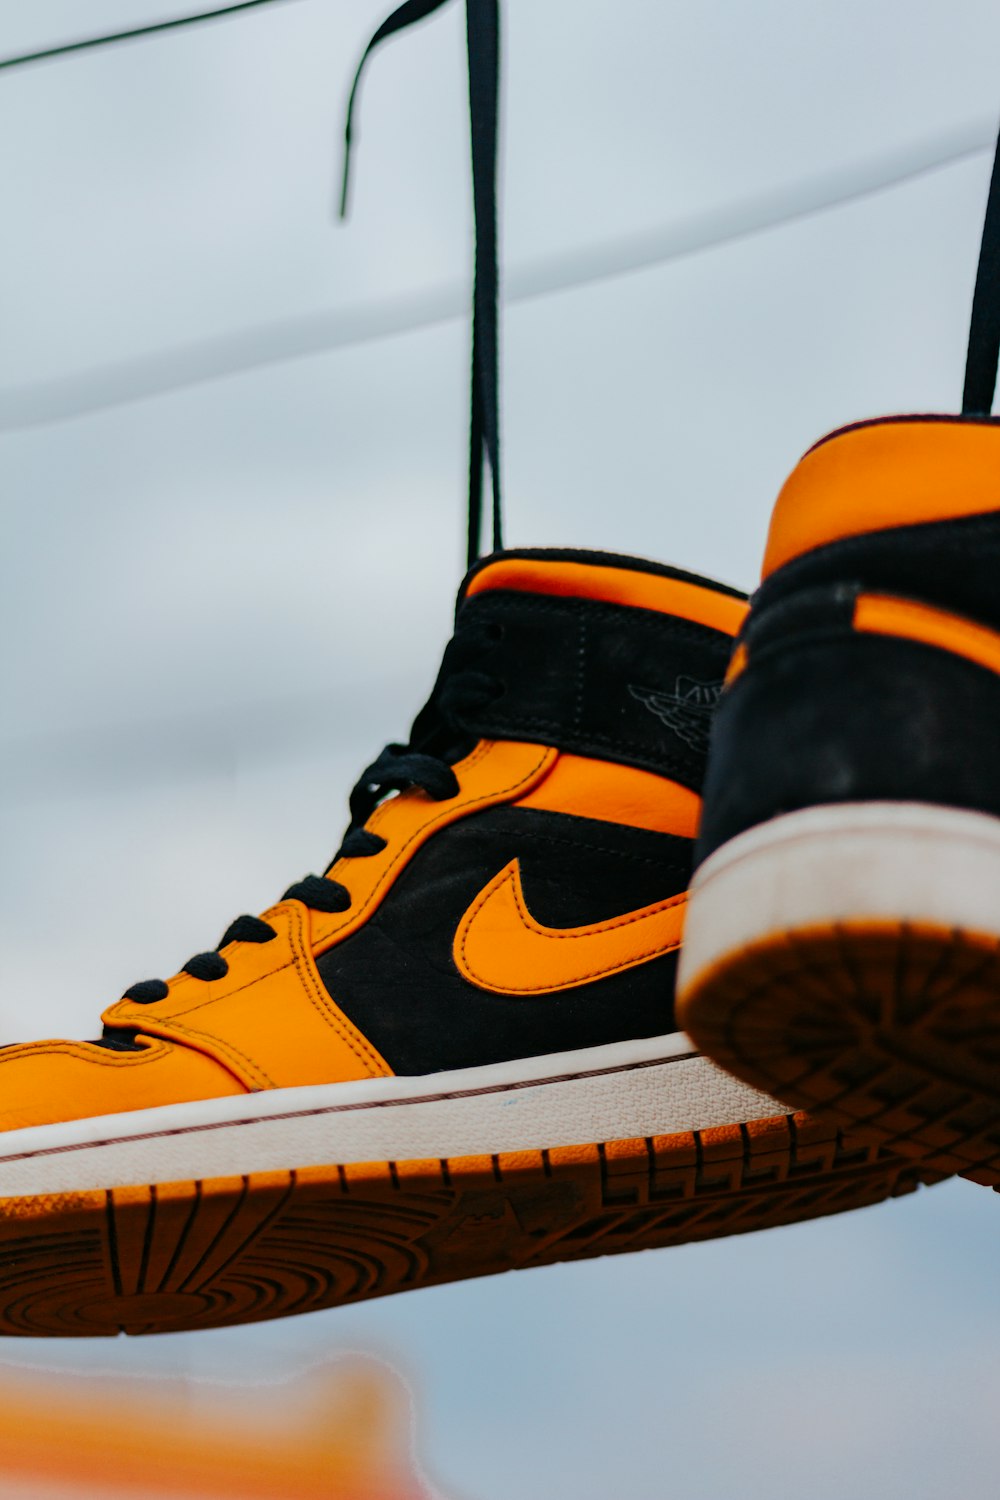 Foto con zapatillas nike altas de color naranja y negro Imagen Calzado gratis en Unsplash